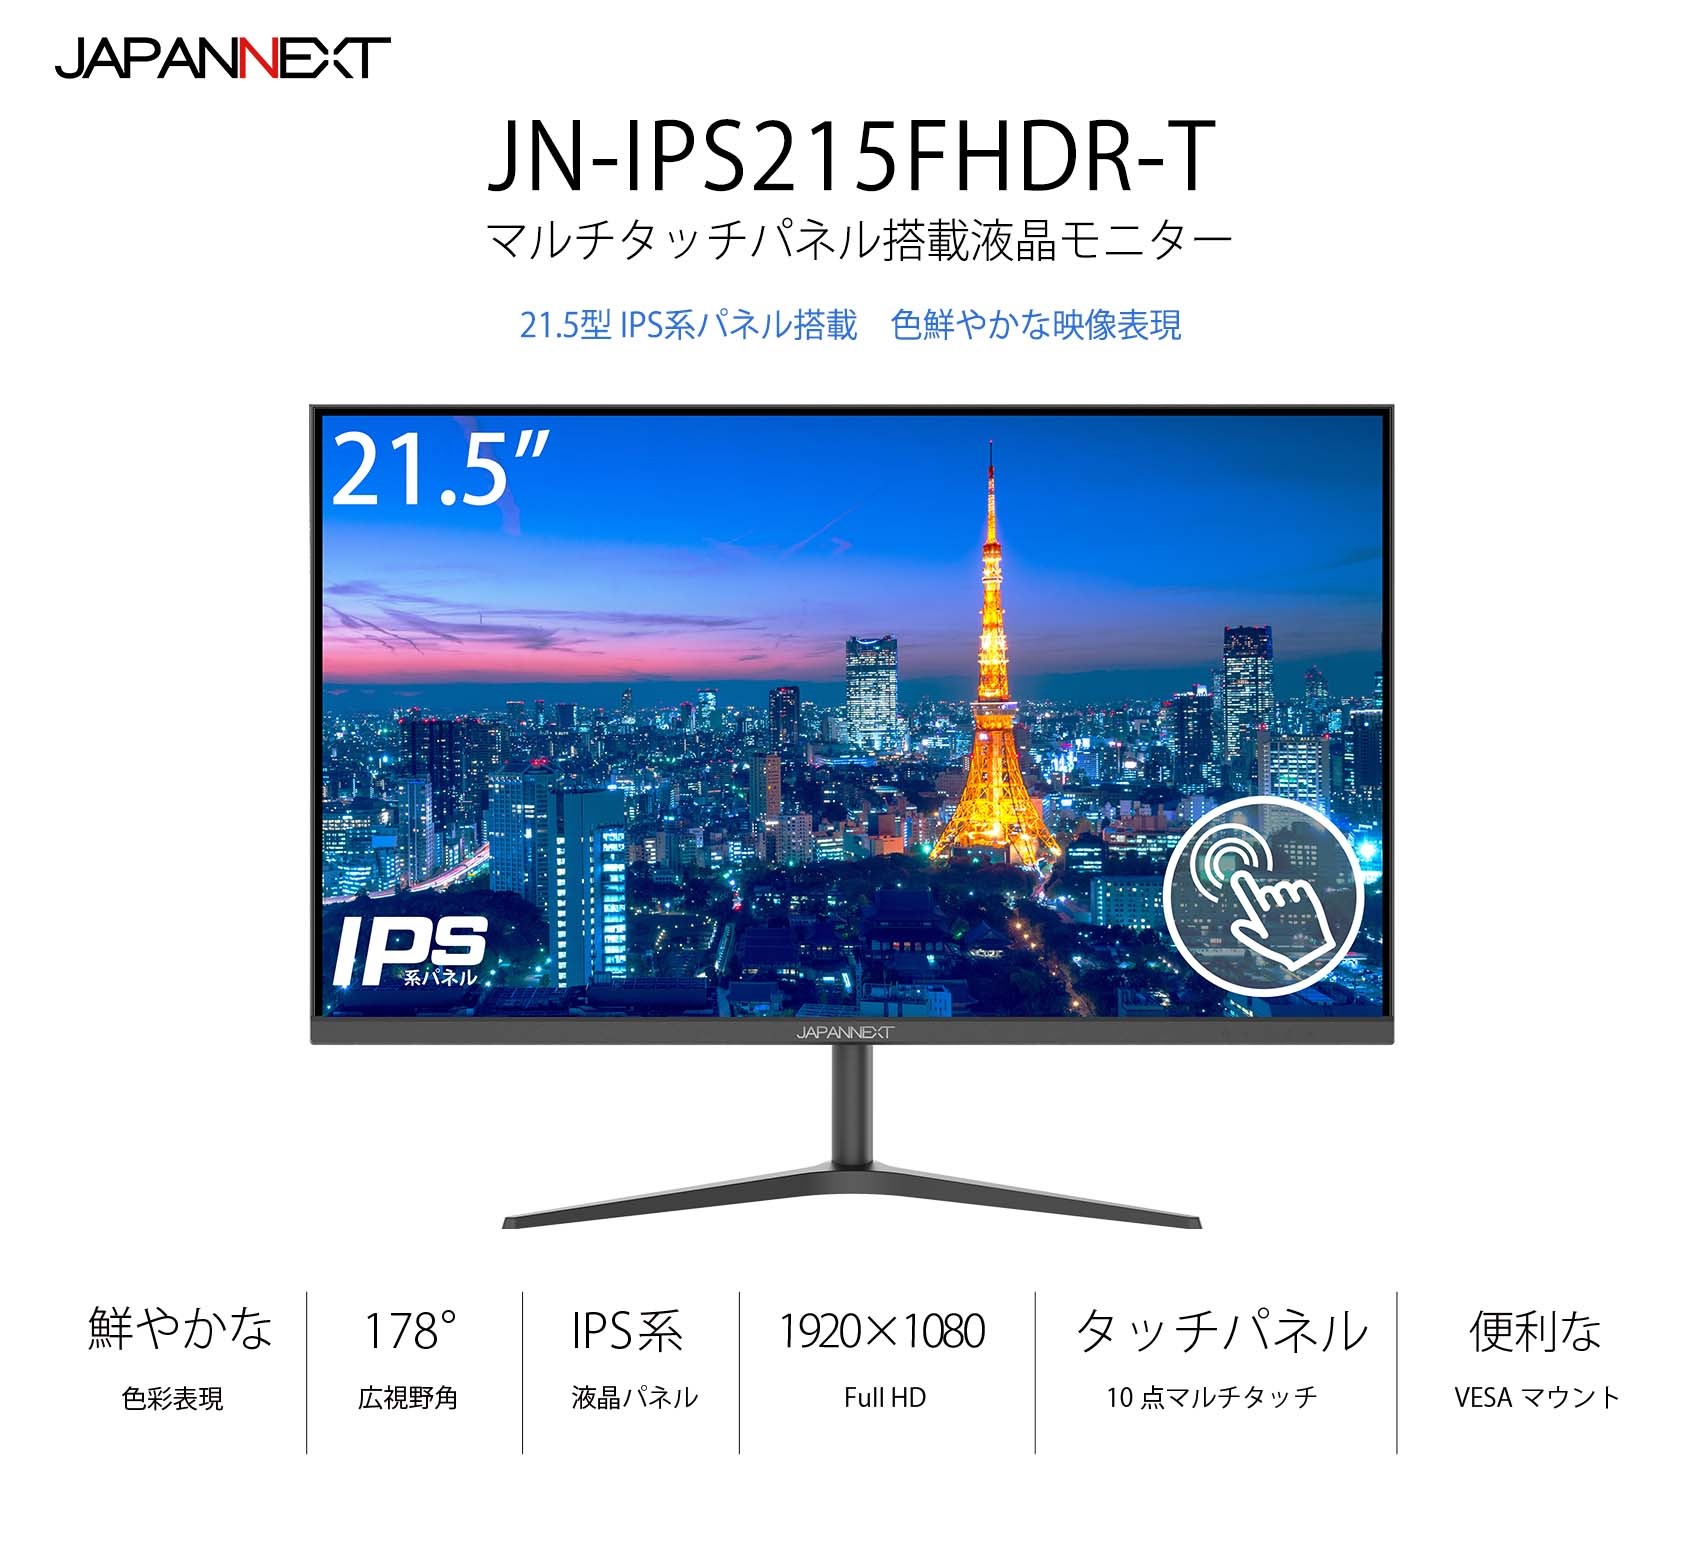 JAPANNEXT「JN-IPS215FHDR-T」 21.5型IPS系フルHDパネル搭載タッチパネル対応モニター (HDMI, USB -C)※在庫無し 液晶ディスプレイ japannext